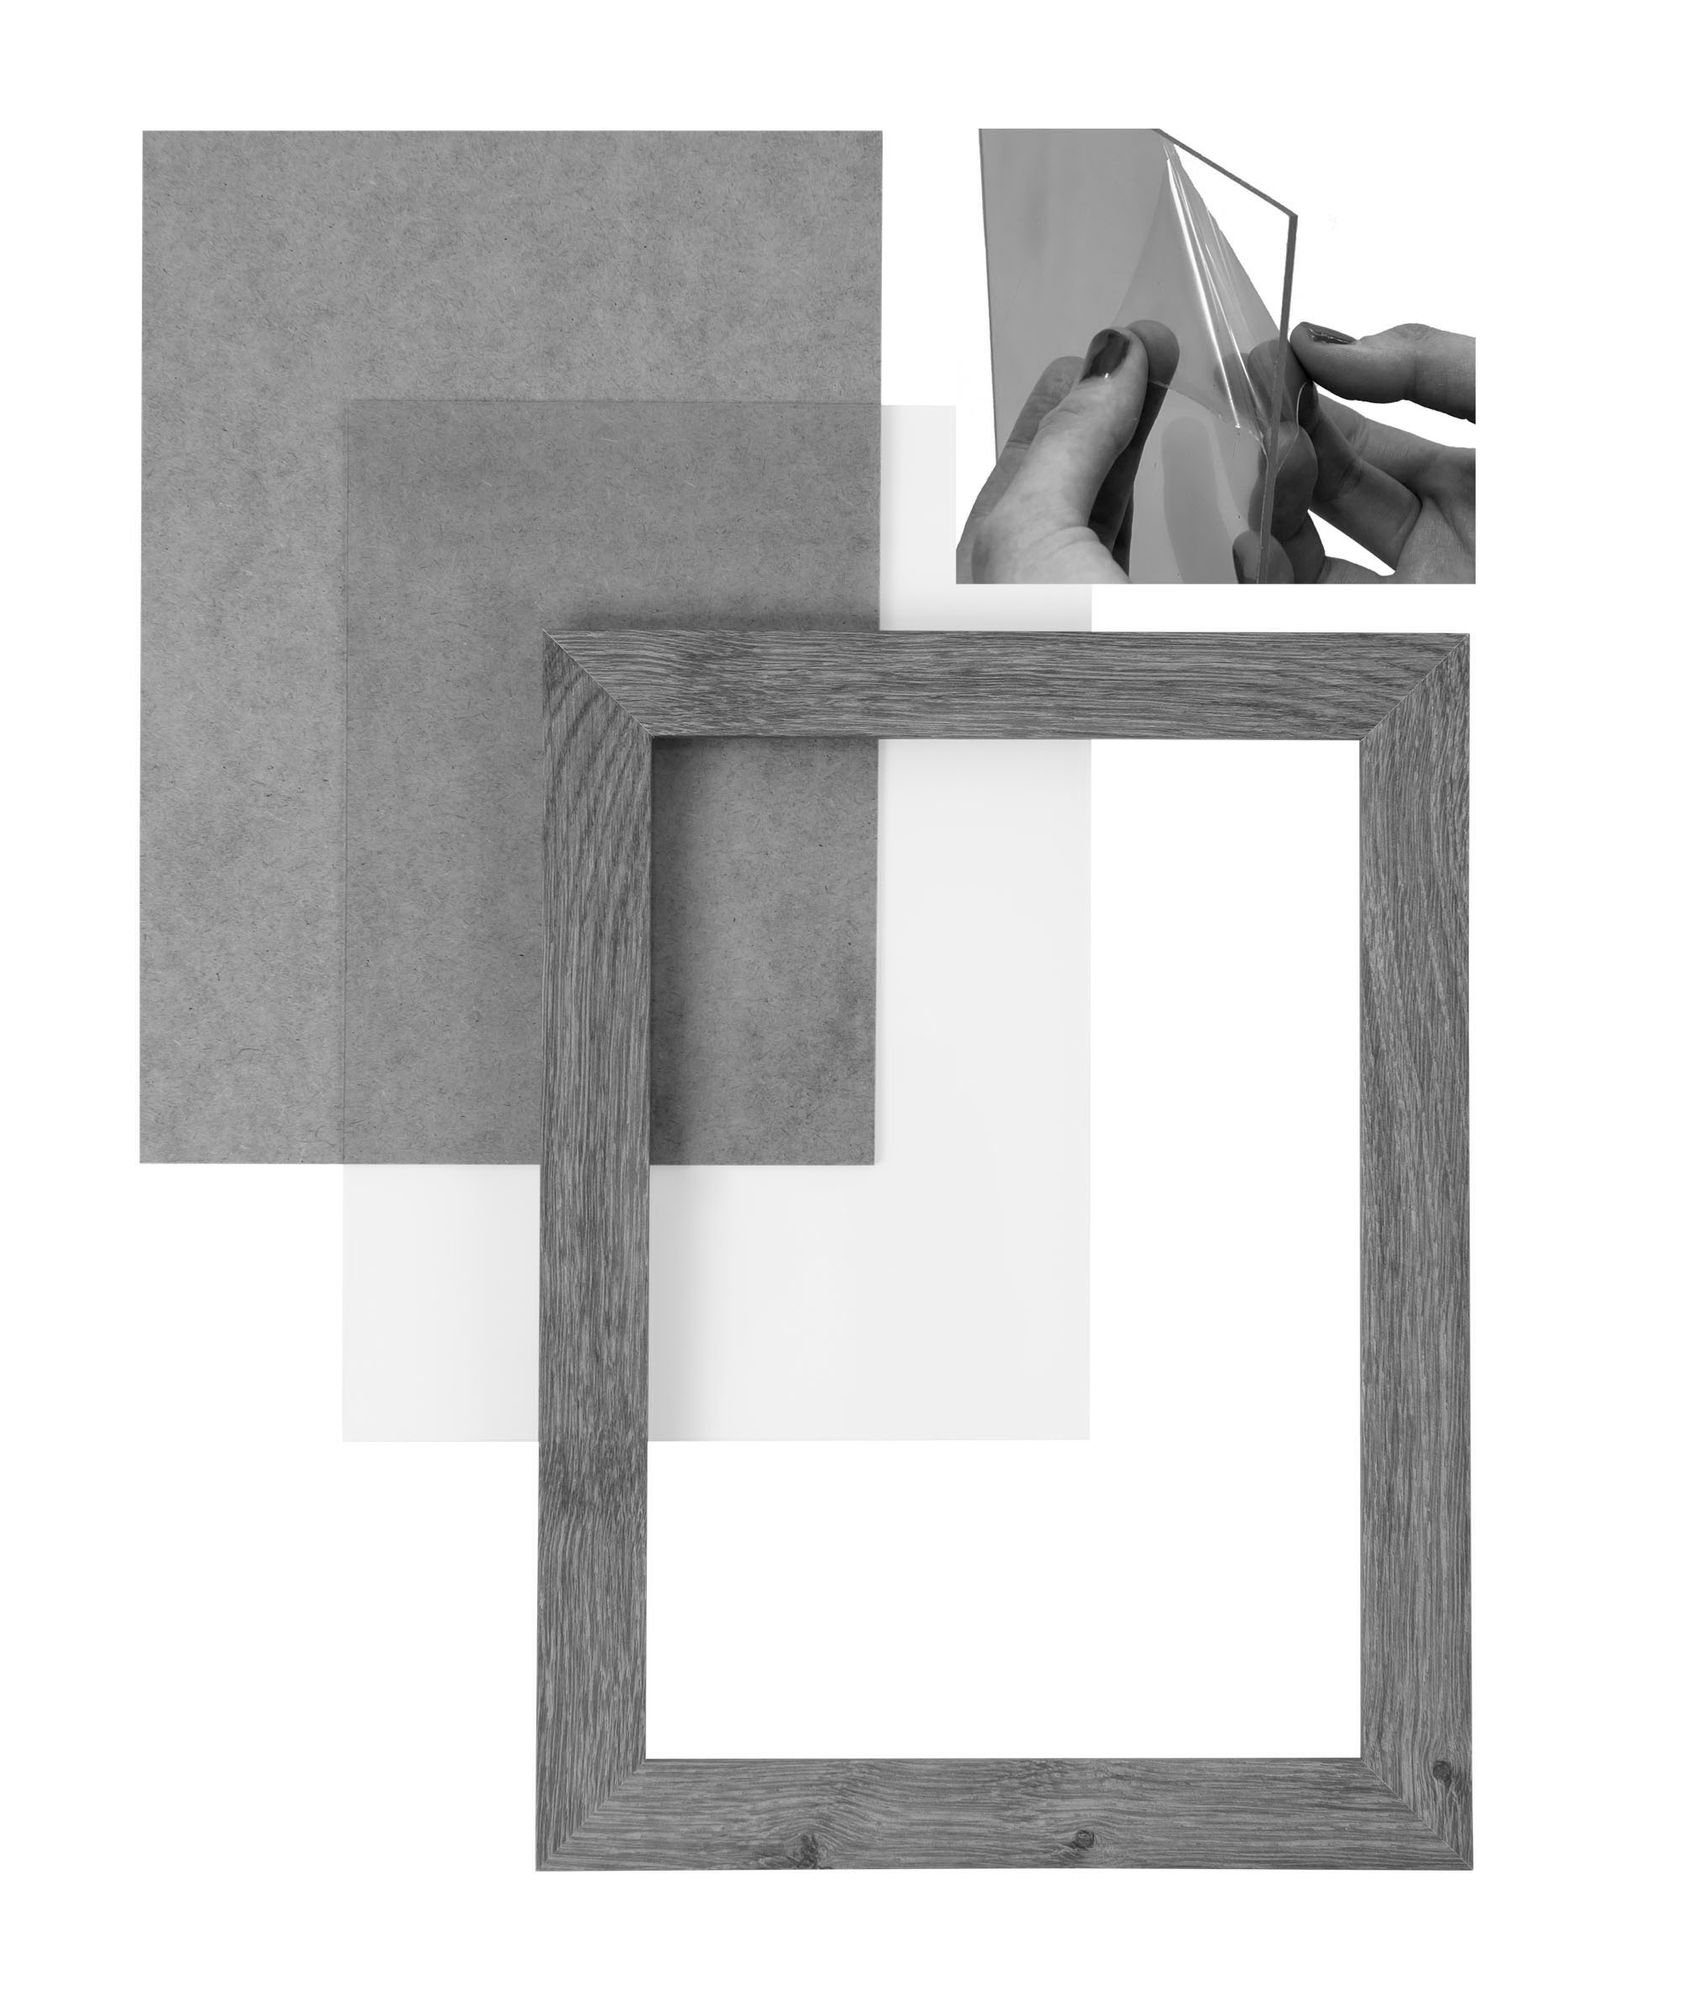 Rückwand eckiger inkl. Clamaro Rahmen 'Collage' Moderner MDF Holz Aufhänger Bilderrahmen Bilderrahmen handgefertigt Maß FSC® und sonama eiche 24x36 in nach Acrylglas, CLAMARO